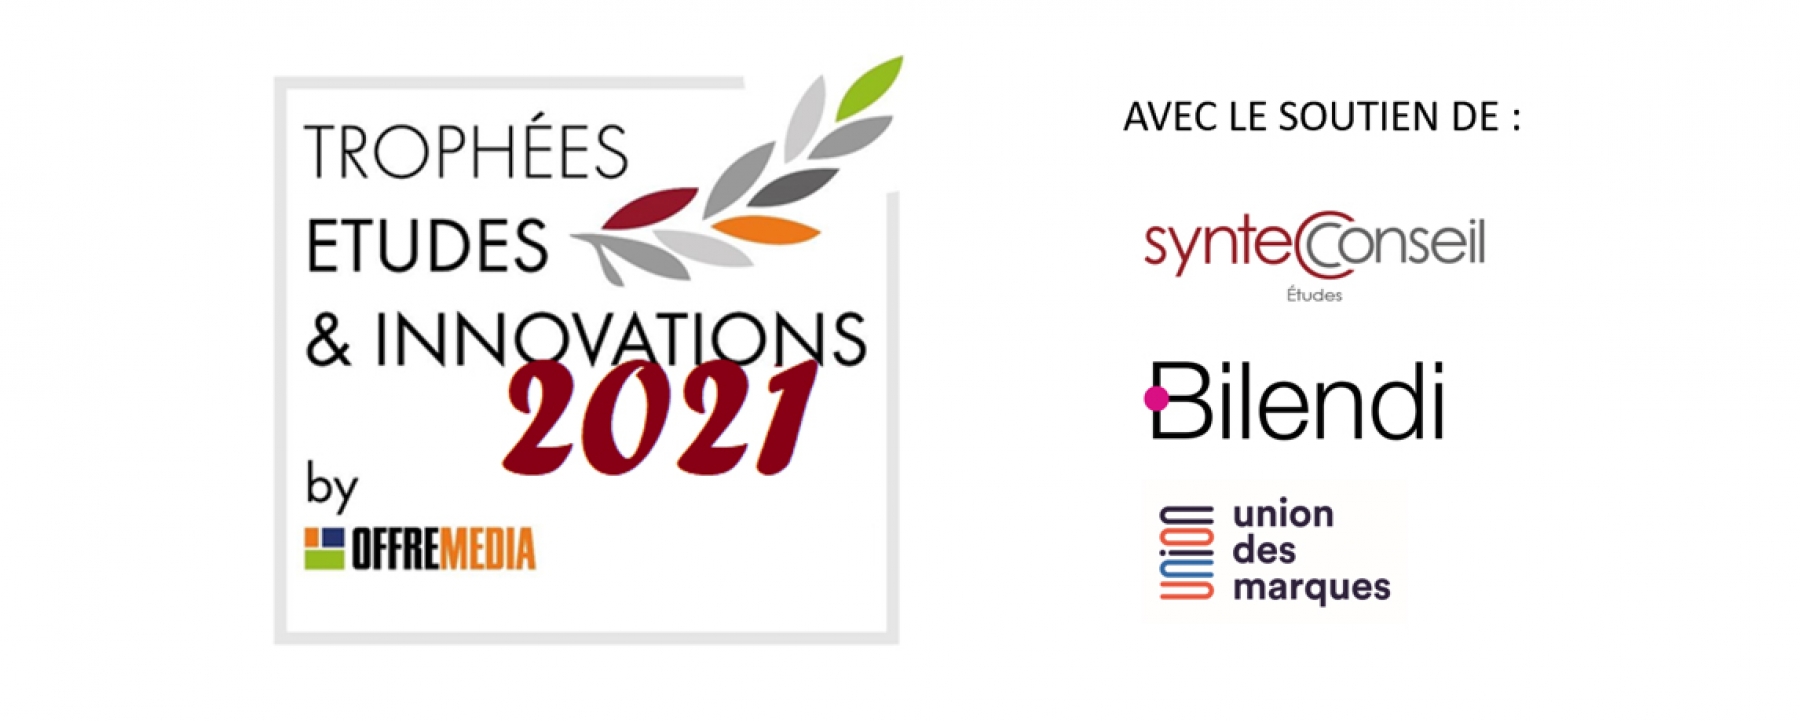 Trophées Etudes et Innovations 2021, par OFFREMEDIA le 9 juin 